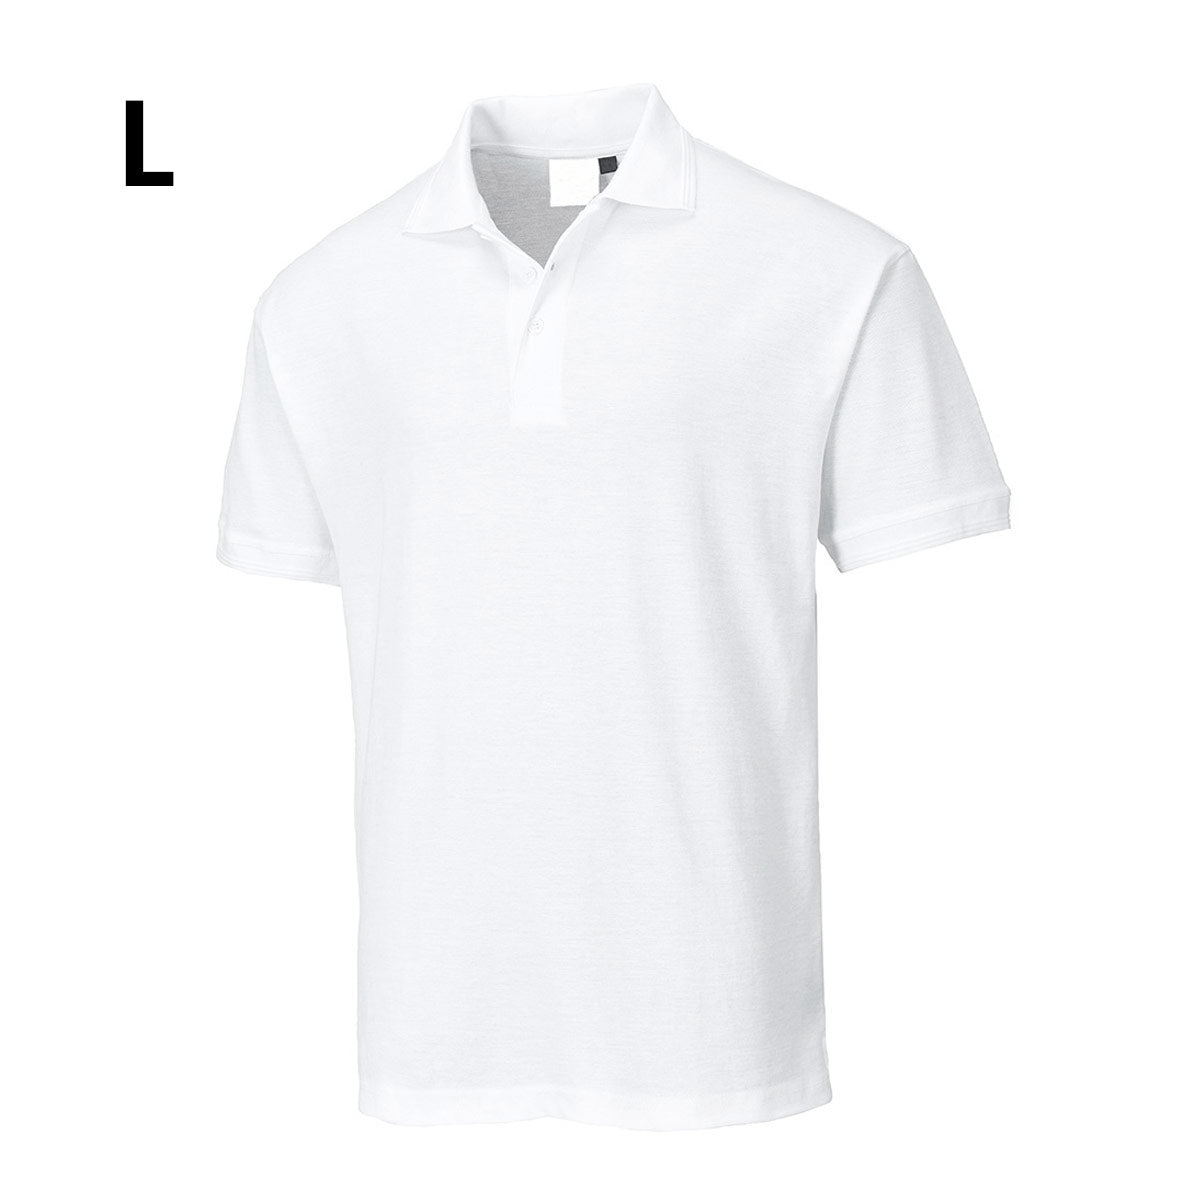 Poloshirt til mænd - Hvid - Størrelse: L